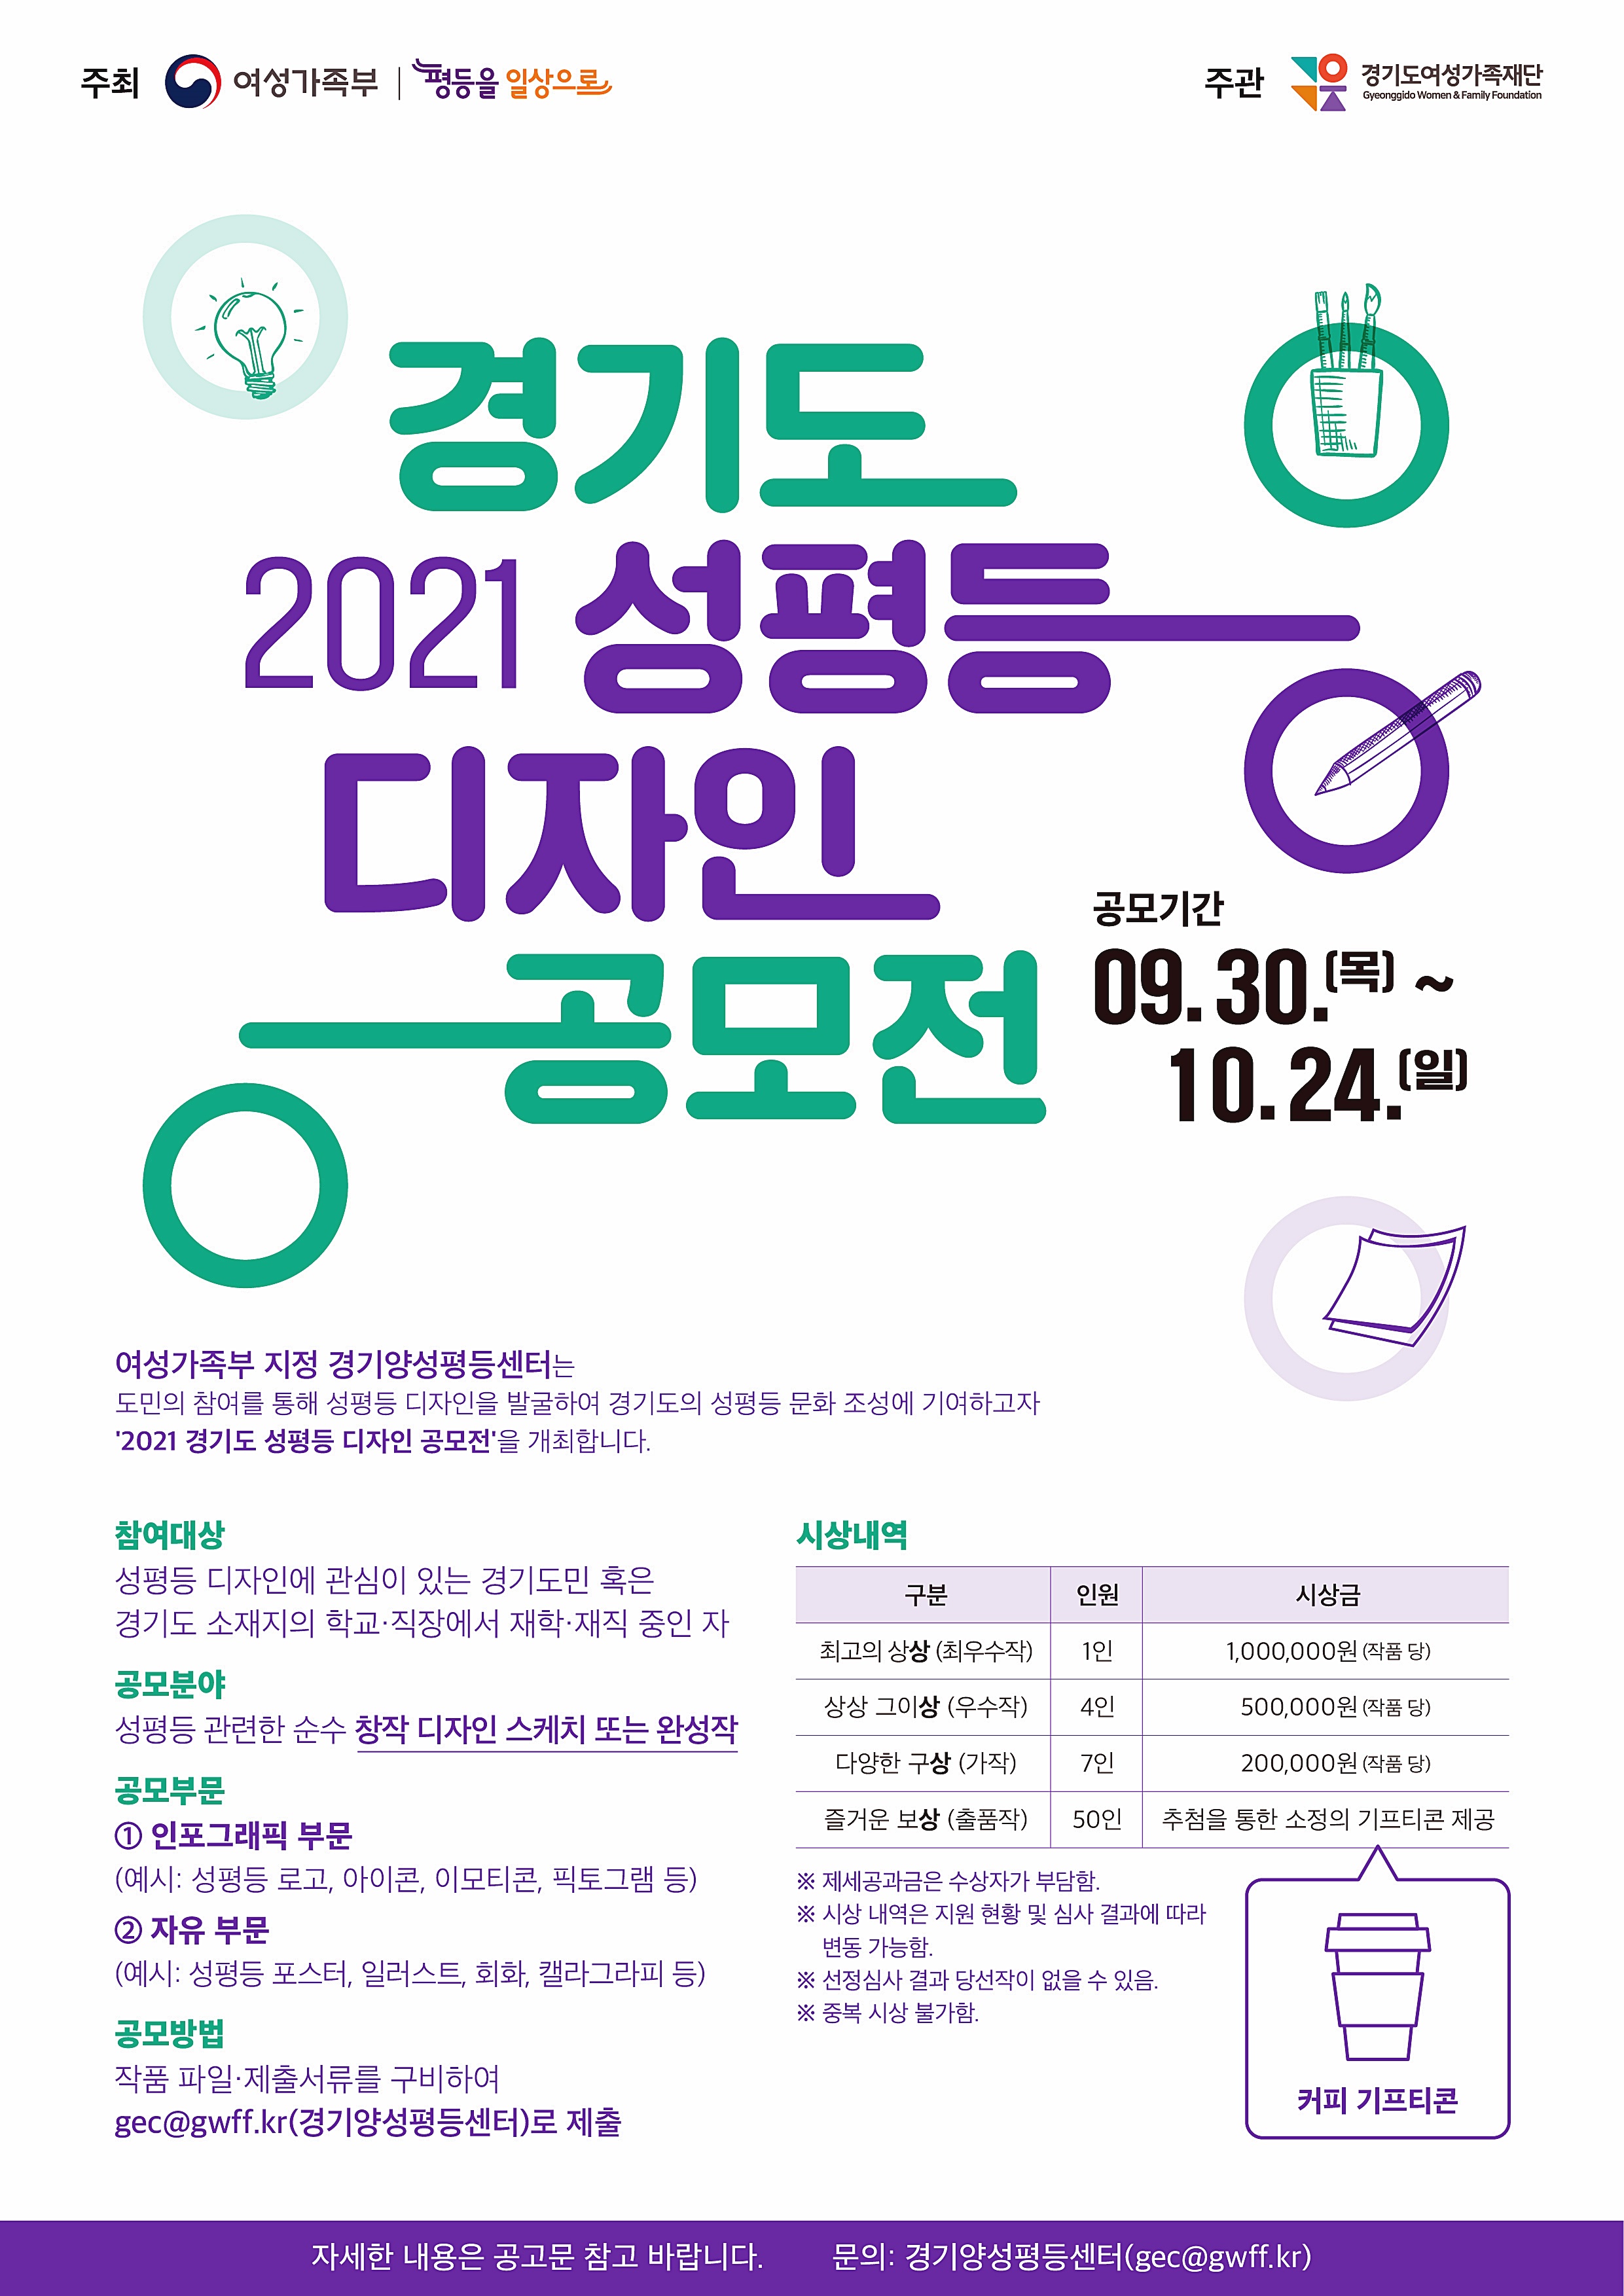 경기도양성평등센터, 경기도 성평등 디자인 공모전 개최